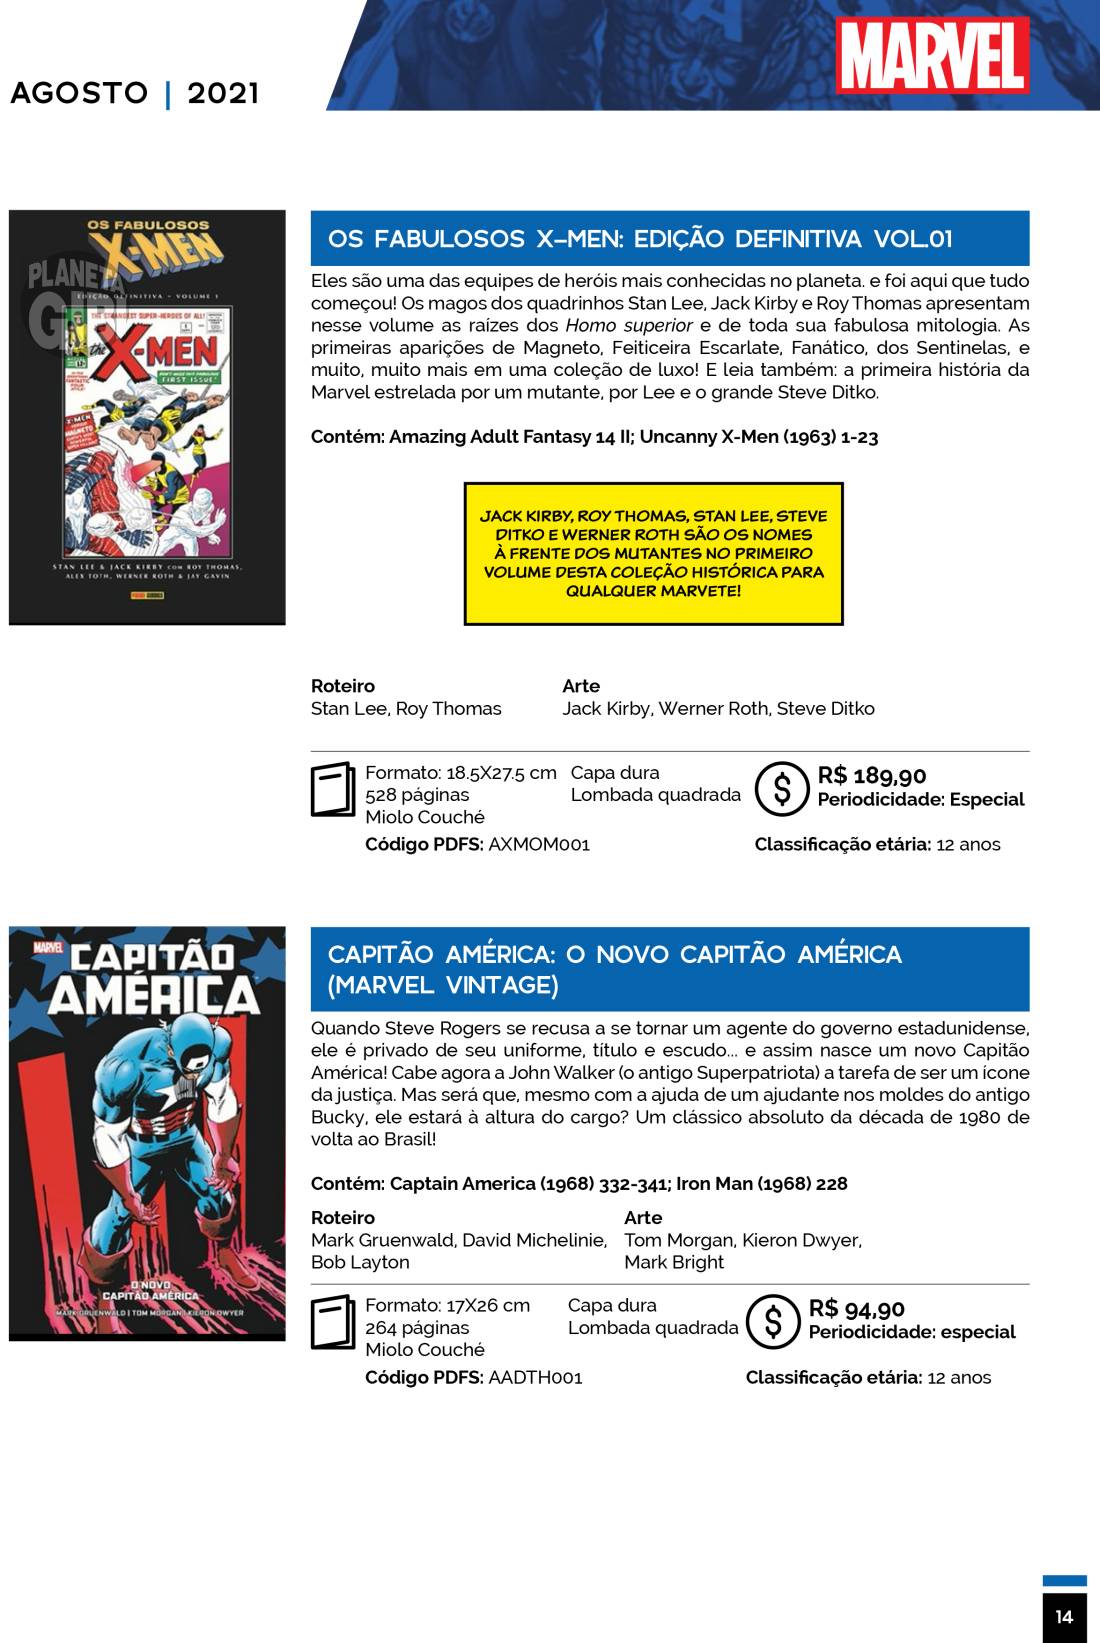 7 - Checklist Marvel/Panini (Julho/2020 - pág.09) - Página 9 Catalogo-Julho-Agosto-14